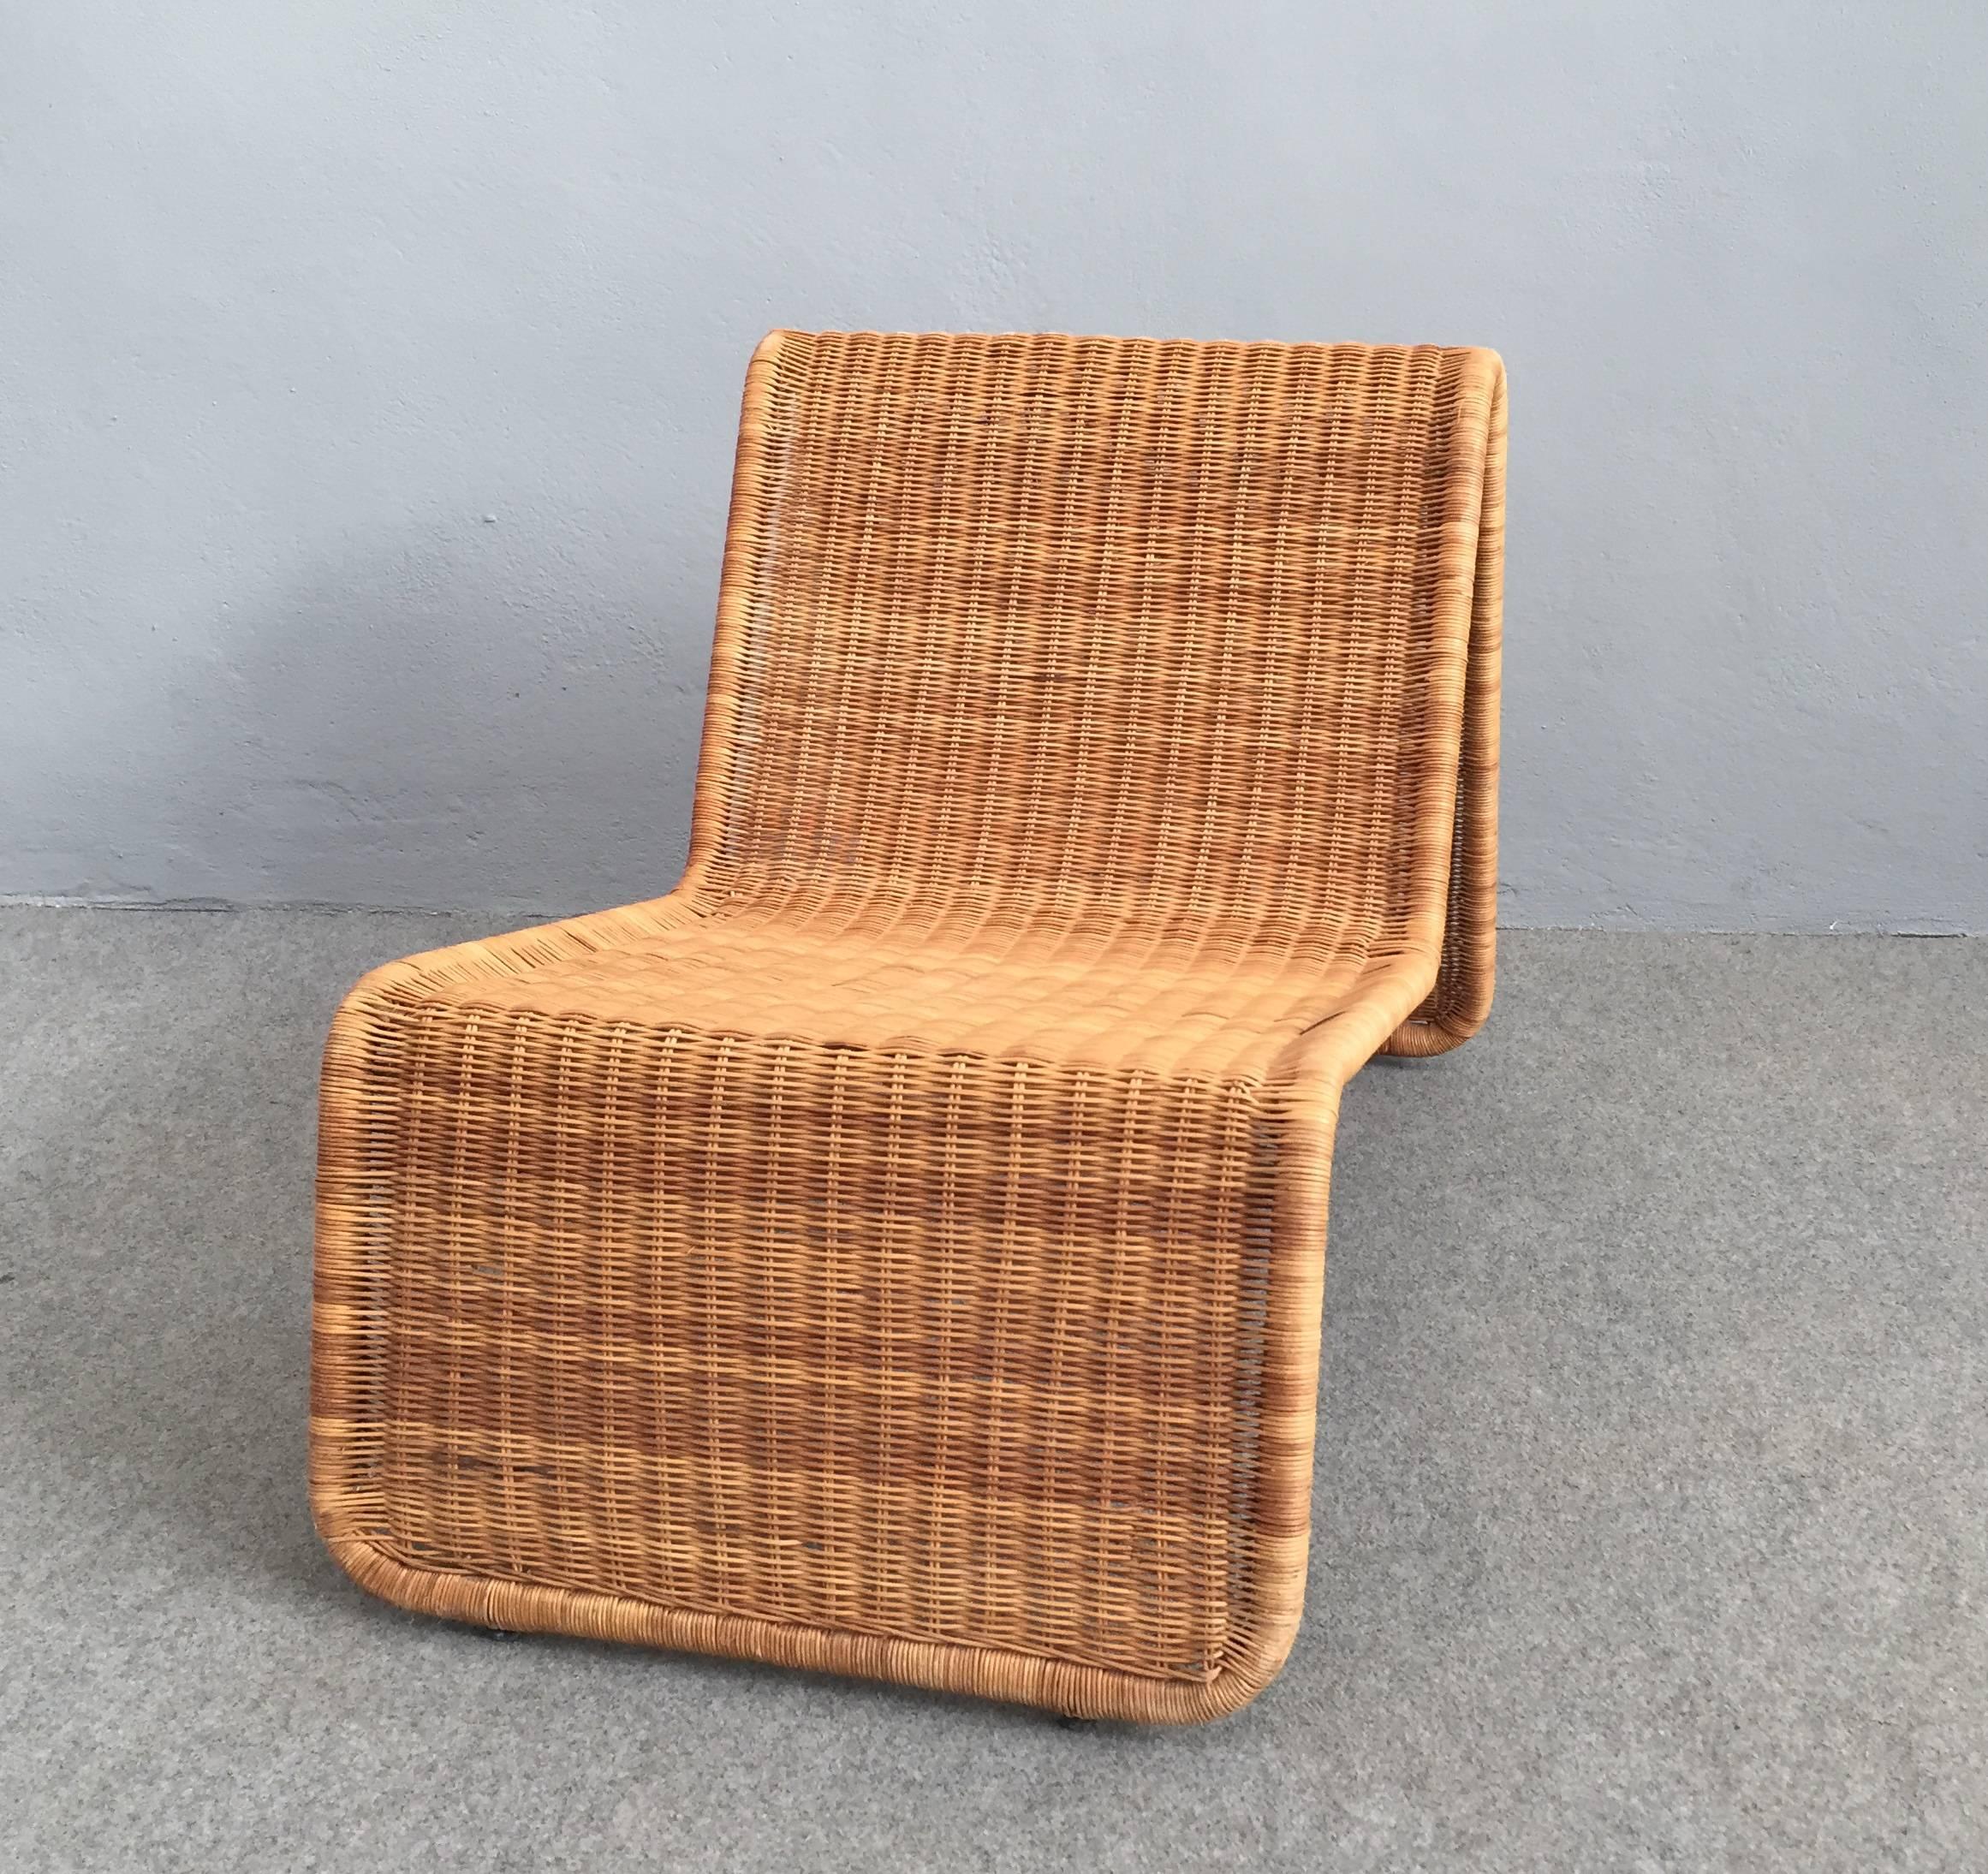 Lounge chair designed by Tito Agnoli, 1962.
Tubular steel frame and woven wicker seat.
Giuliana Gramigna, Repertorio 1950-1980, Mondadori, Milano 1985, p. 181.